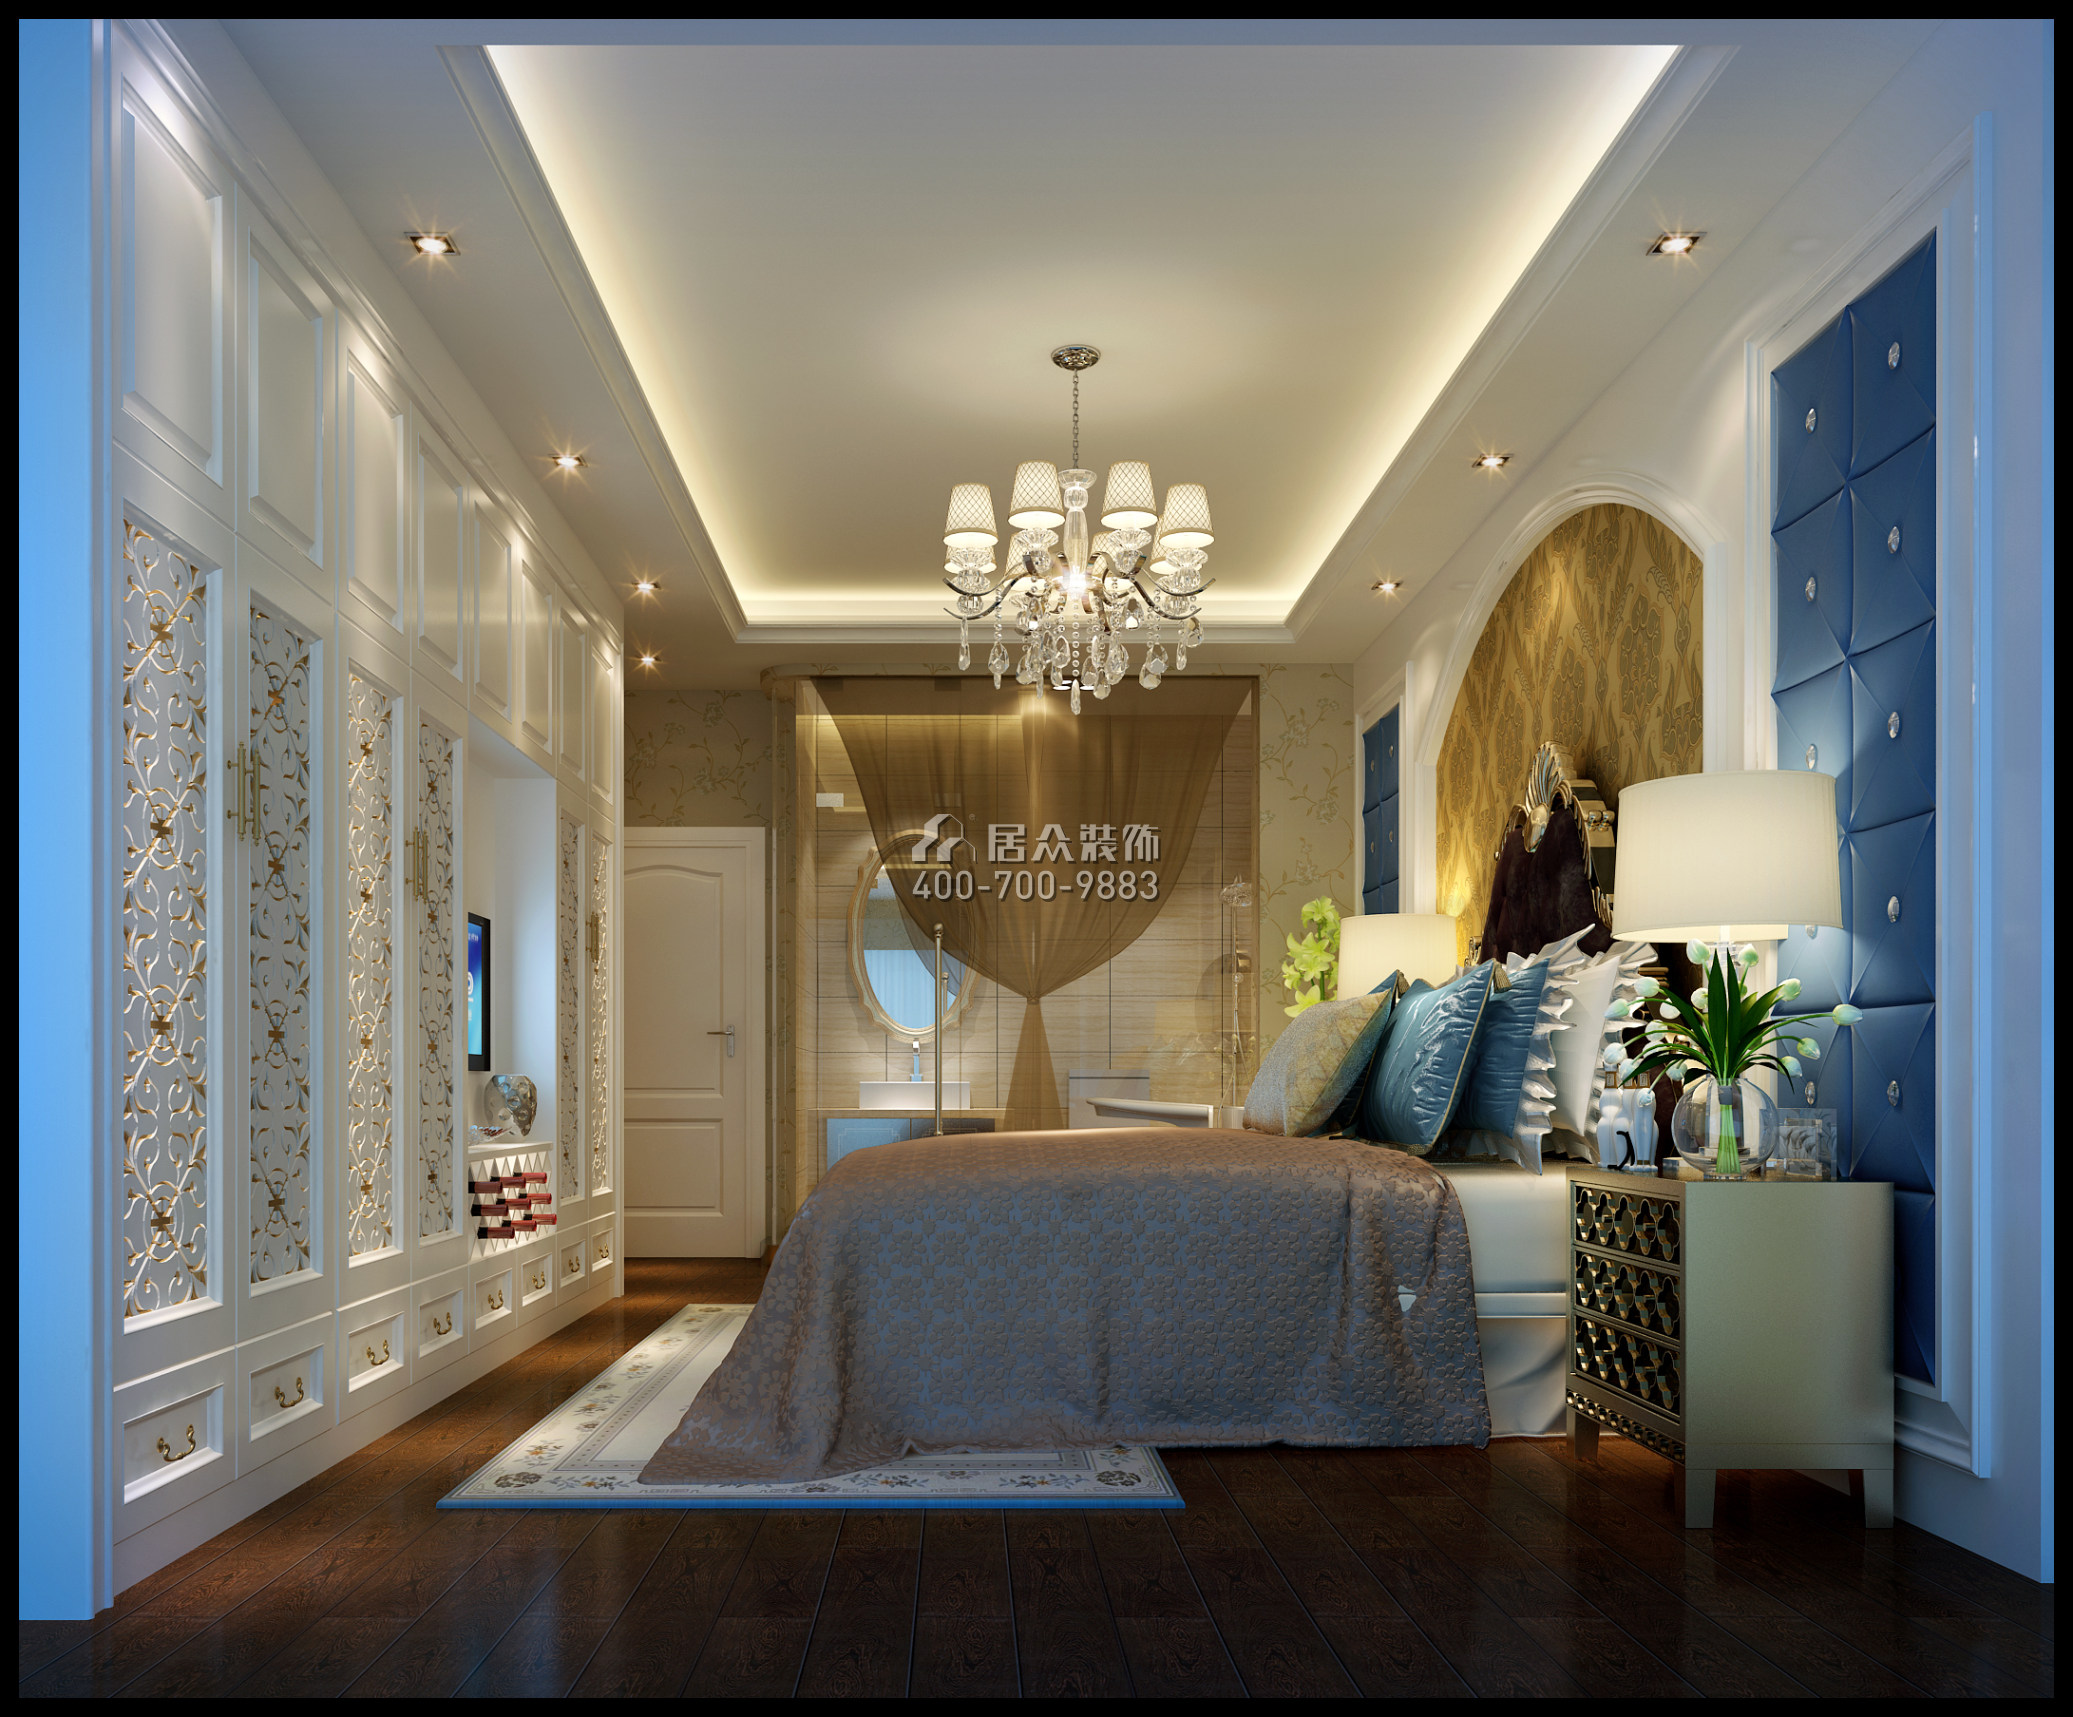 熙和园160平方米欧式风格复式户型卧室装修效果图